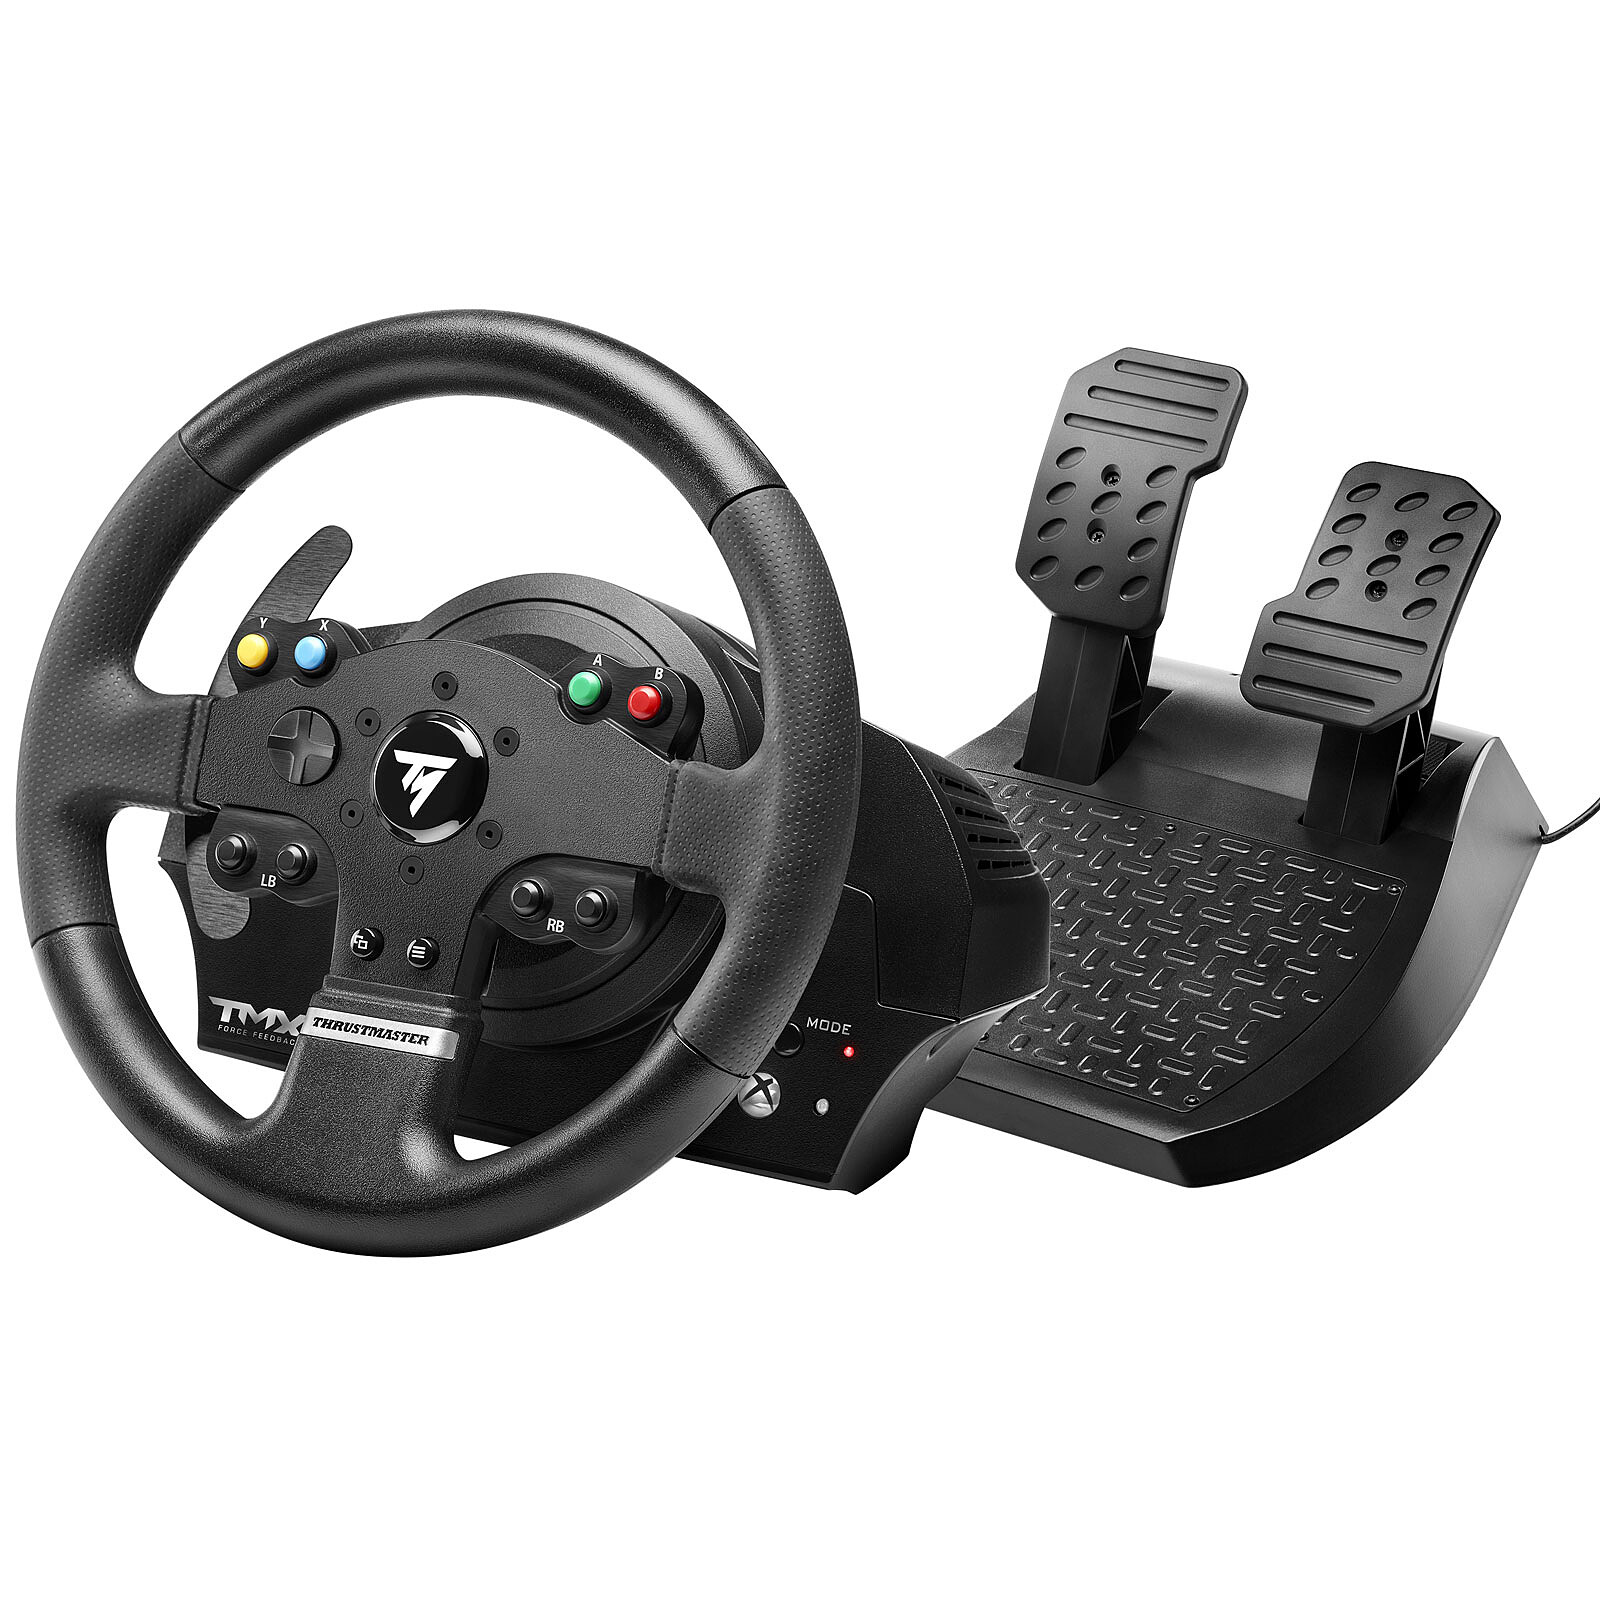 Krom K-Wheel - Comprar volante + pedales PC/PS3/PS4/Xbox barato